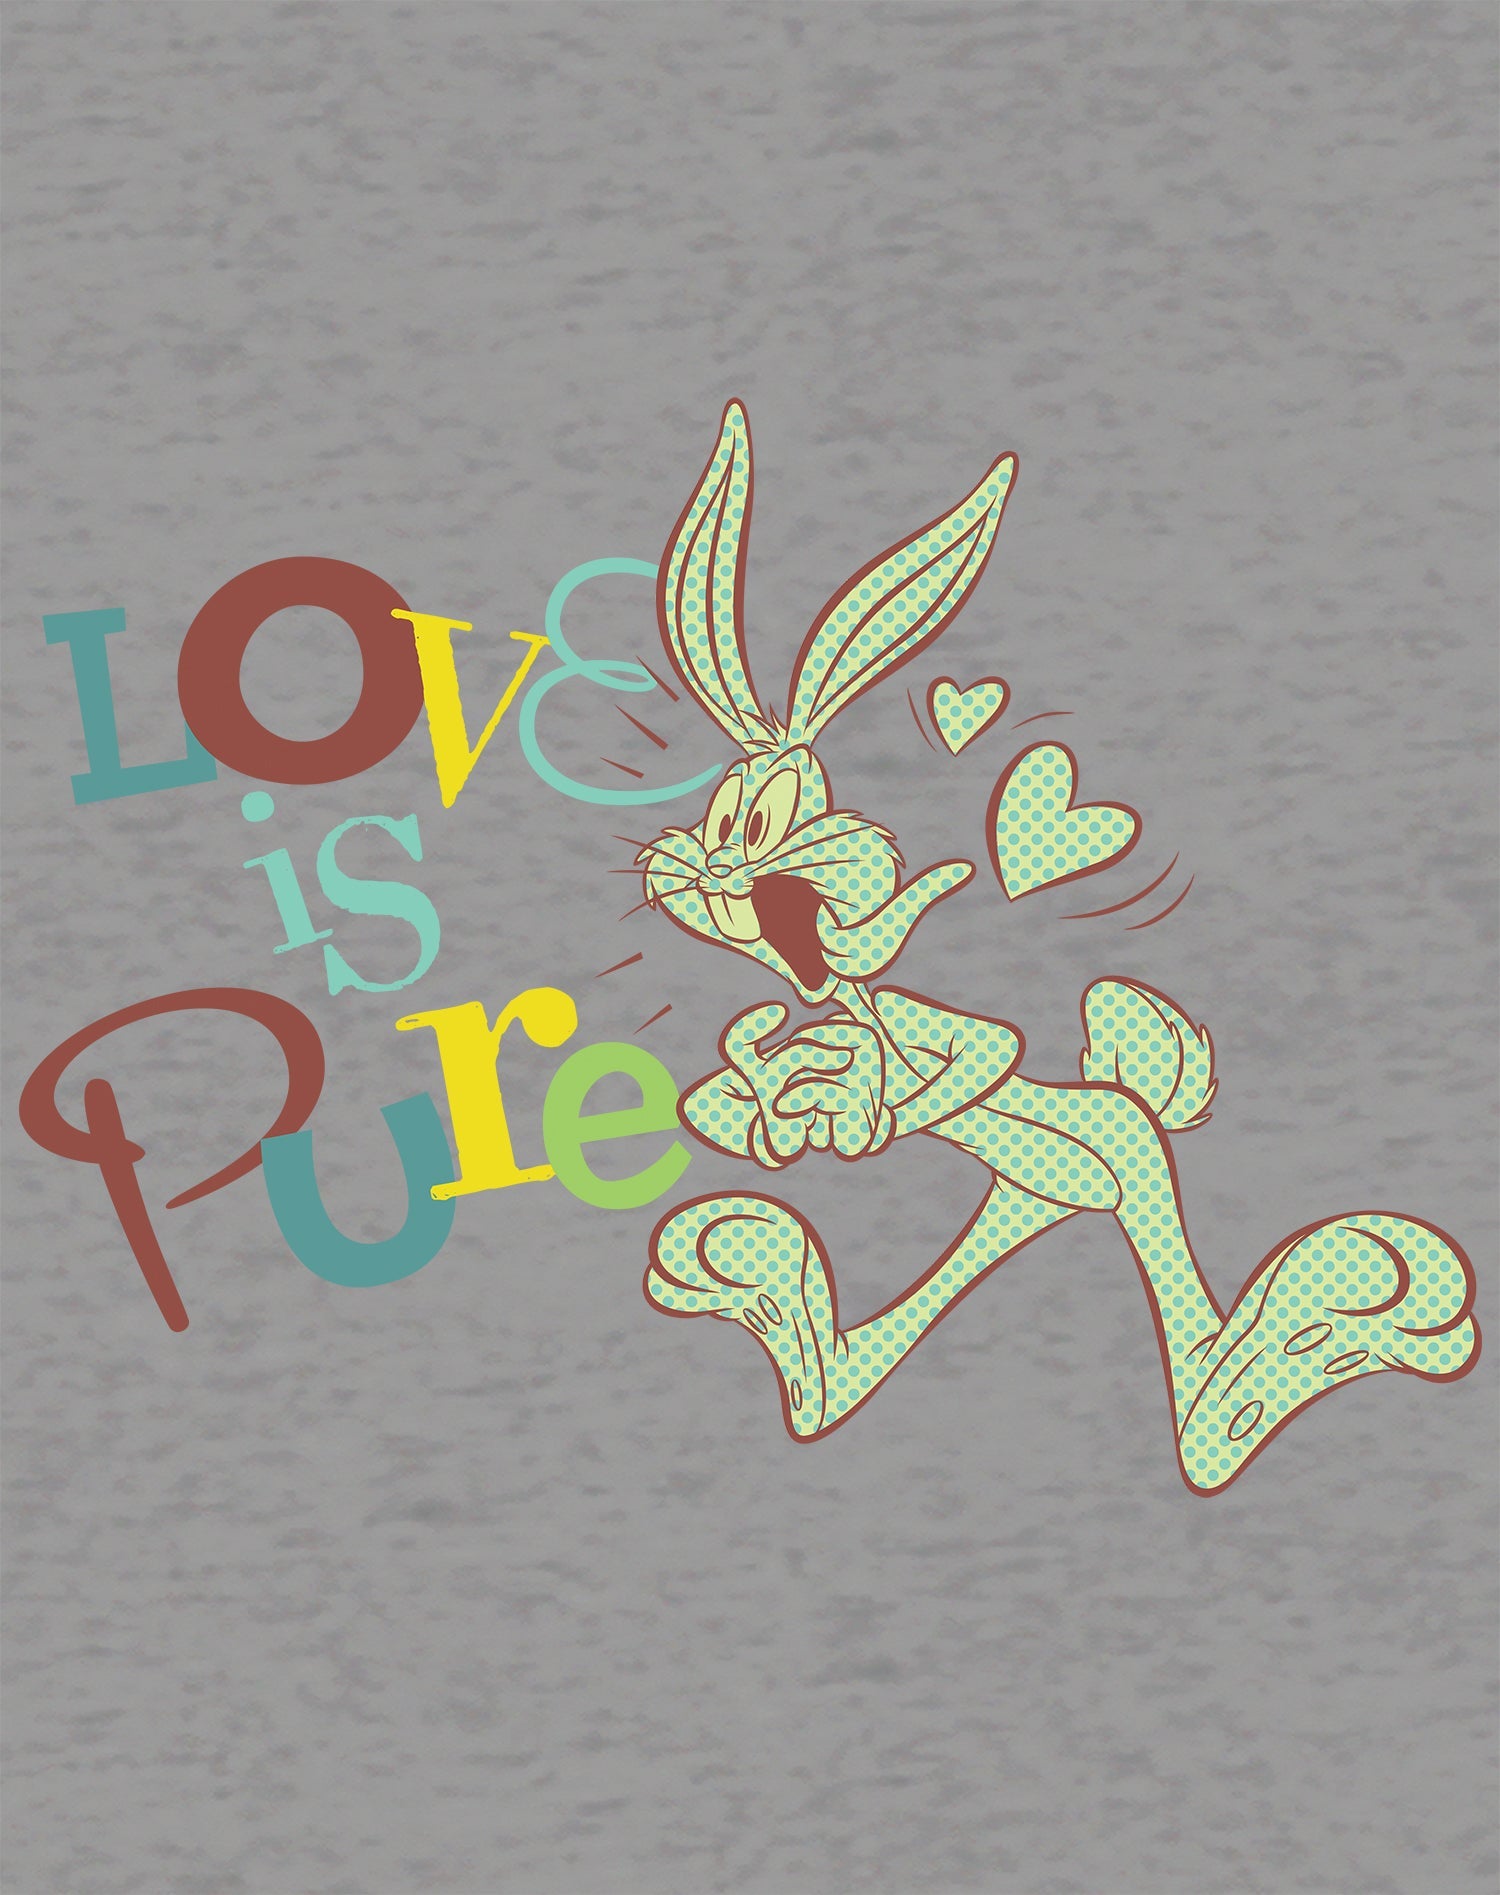 Looney Tunes Bugs Bunny Retro Love Pure Official Sweatshirt